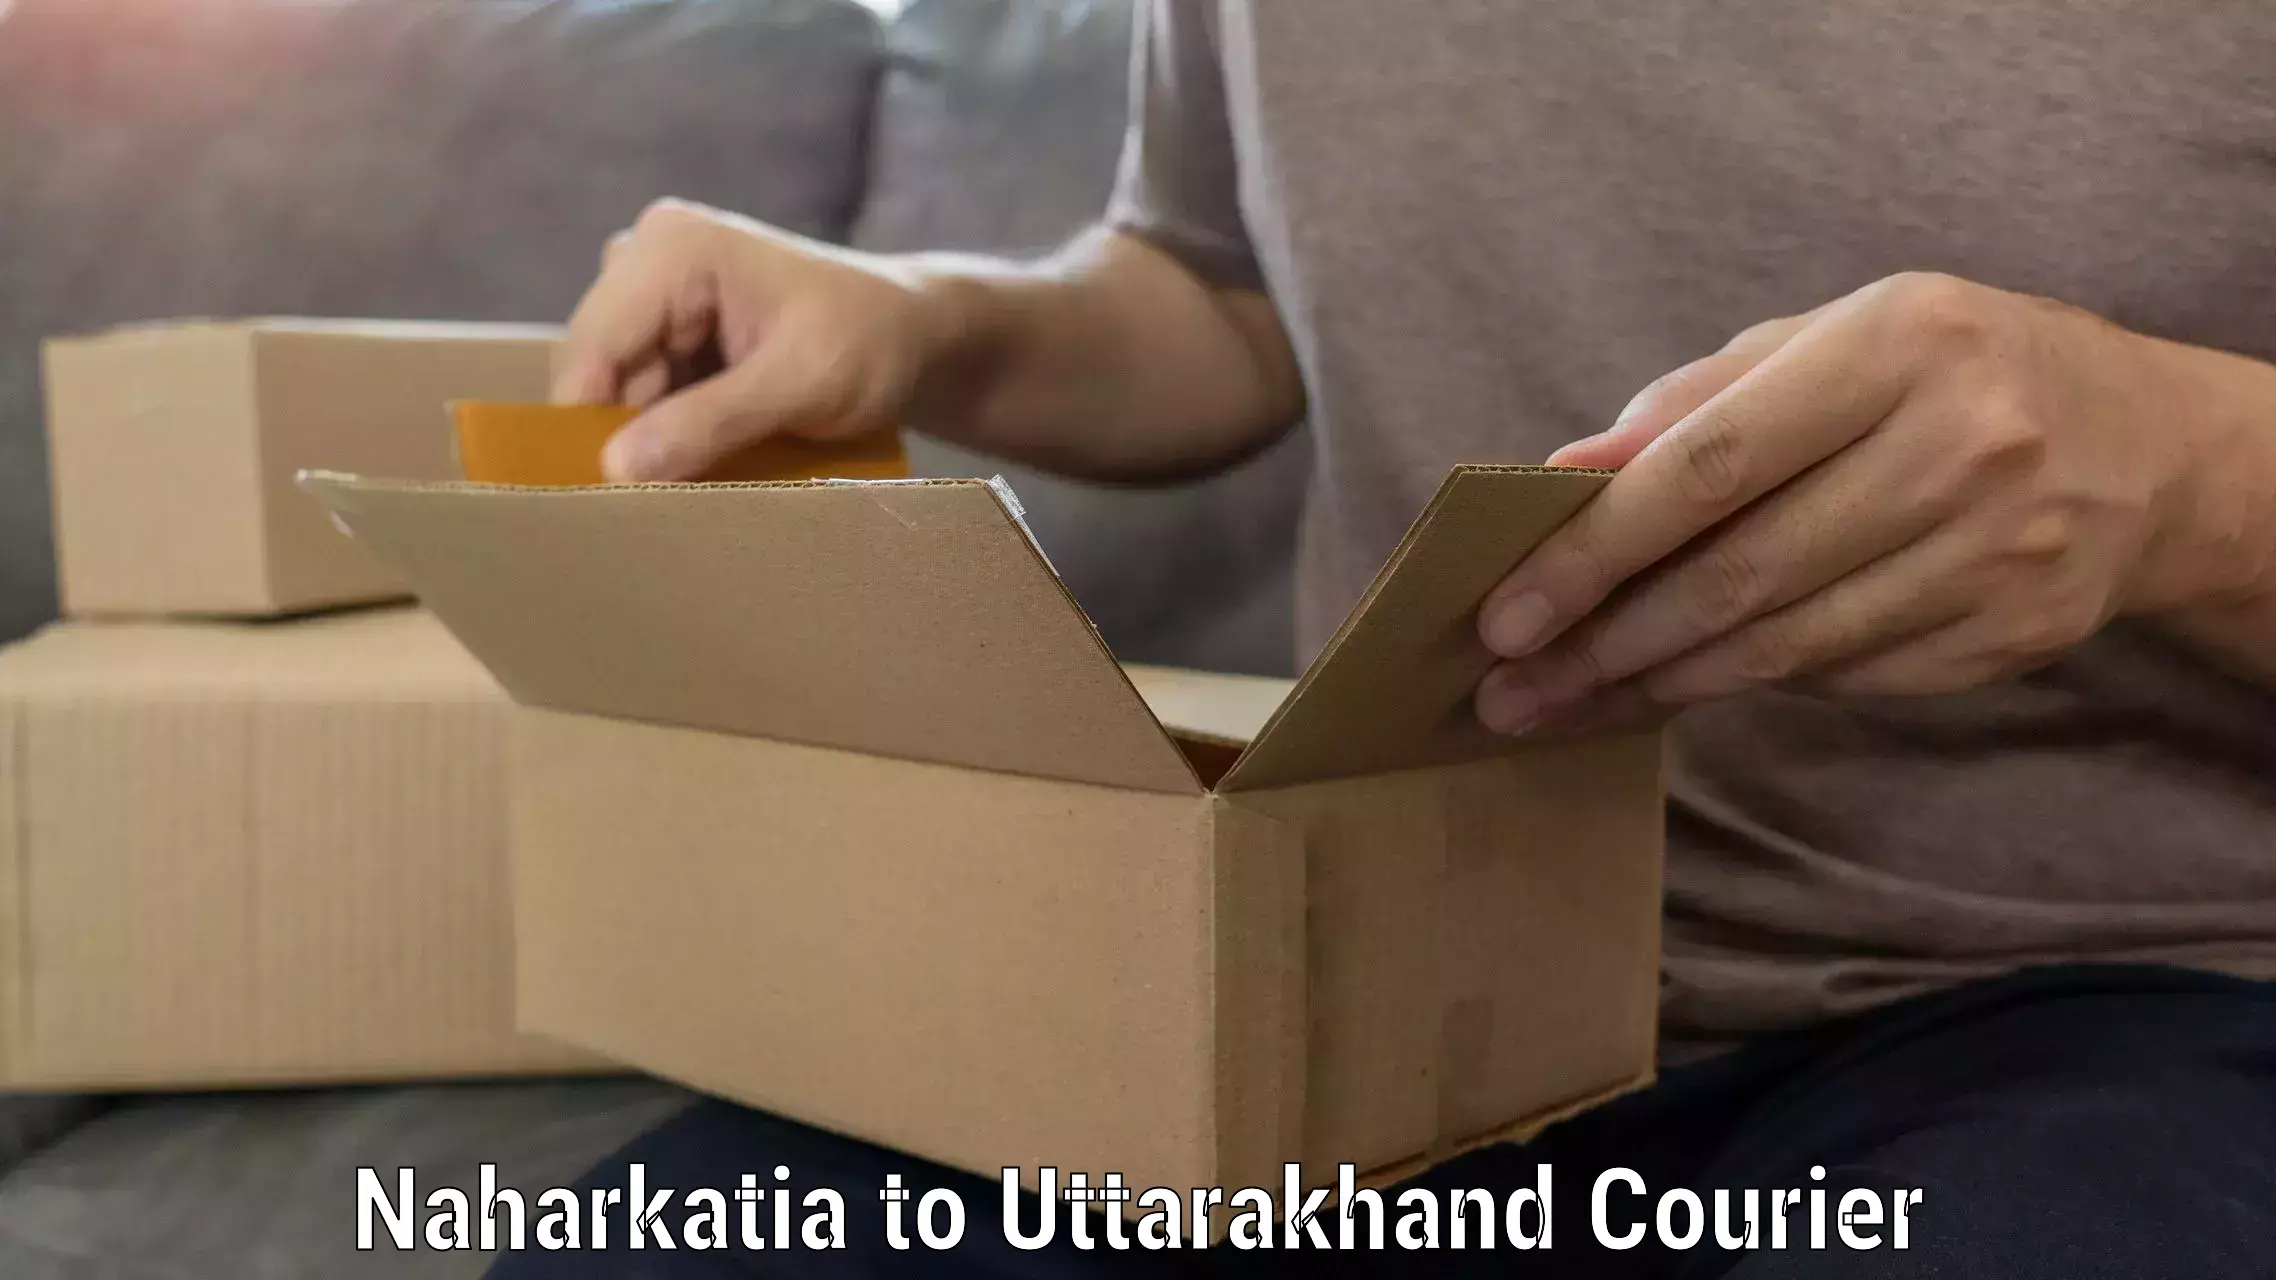 Furniture moving experts Naharkatia to Uttarakhand